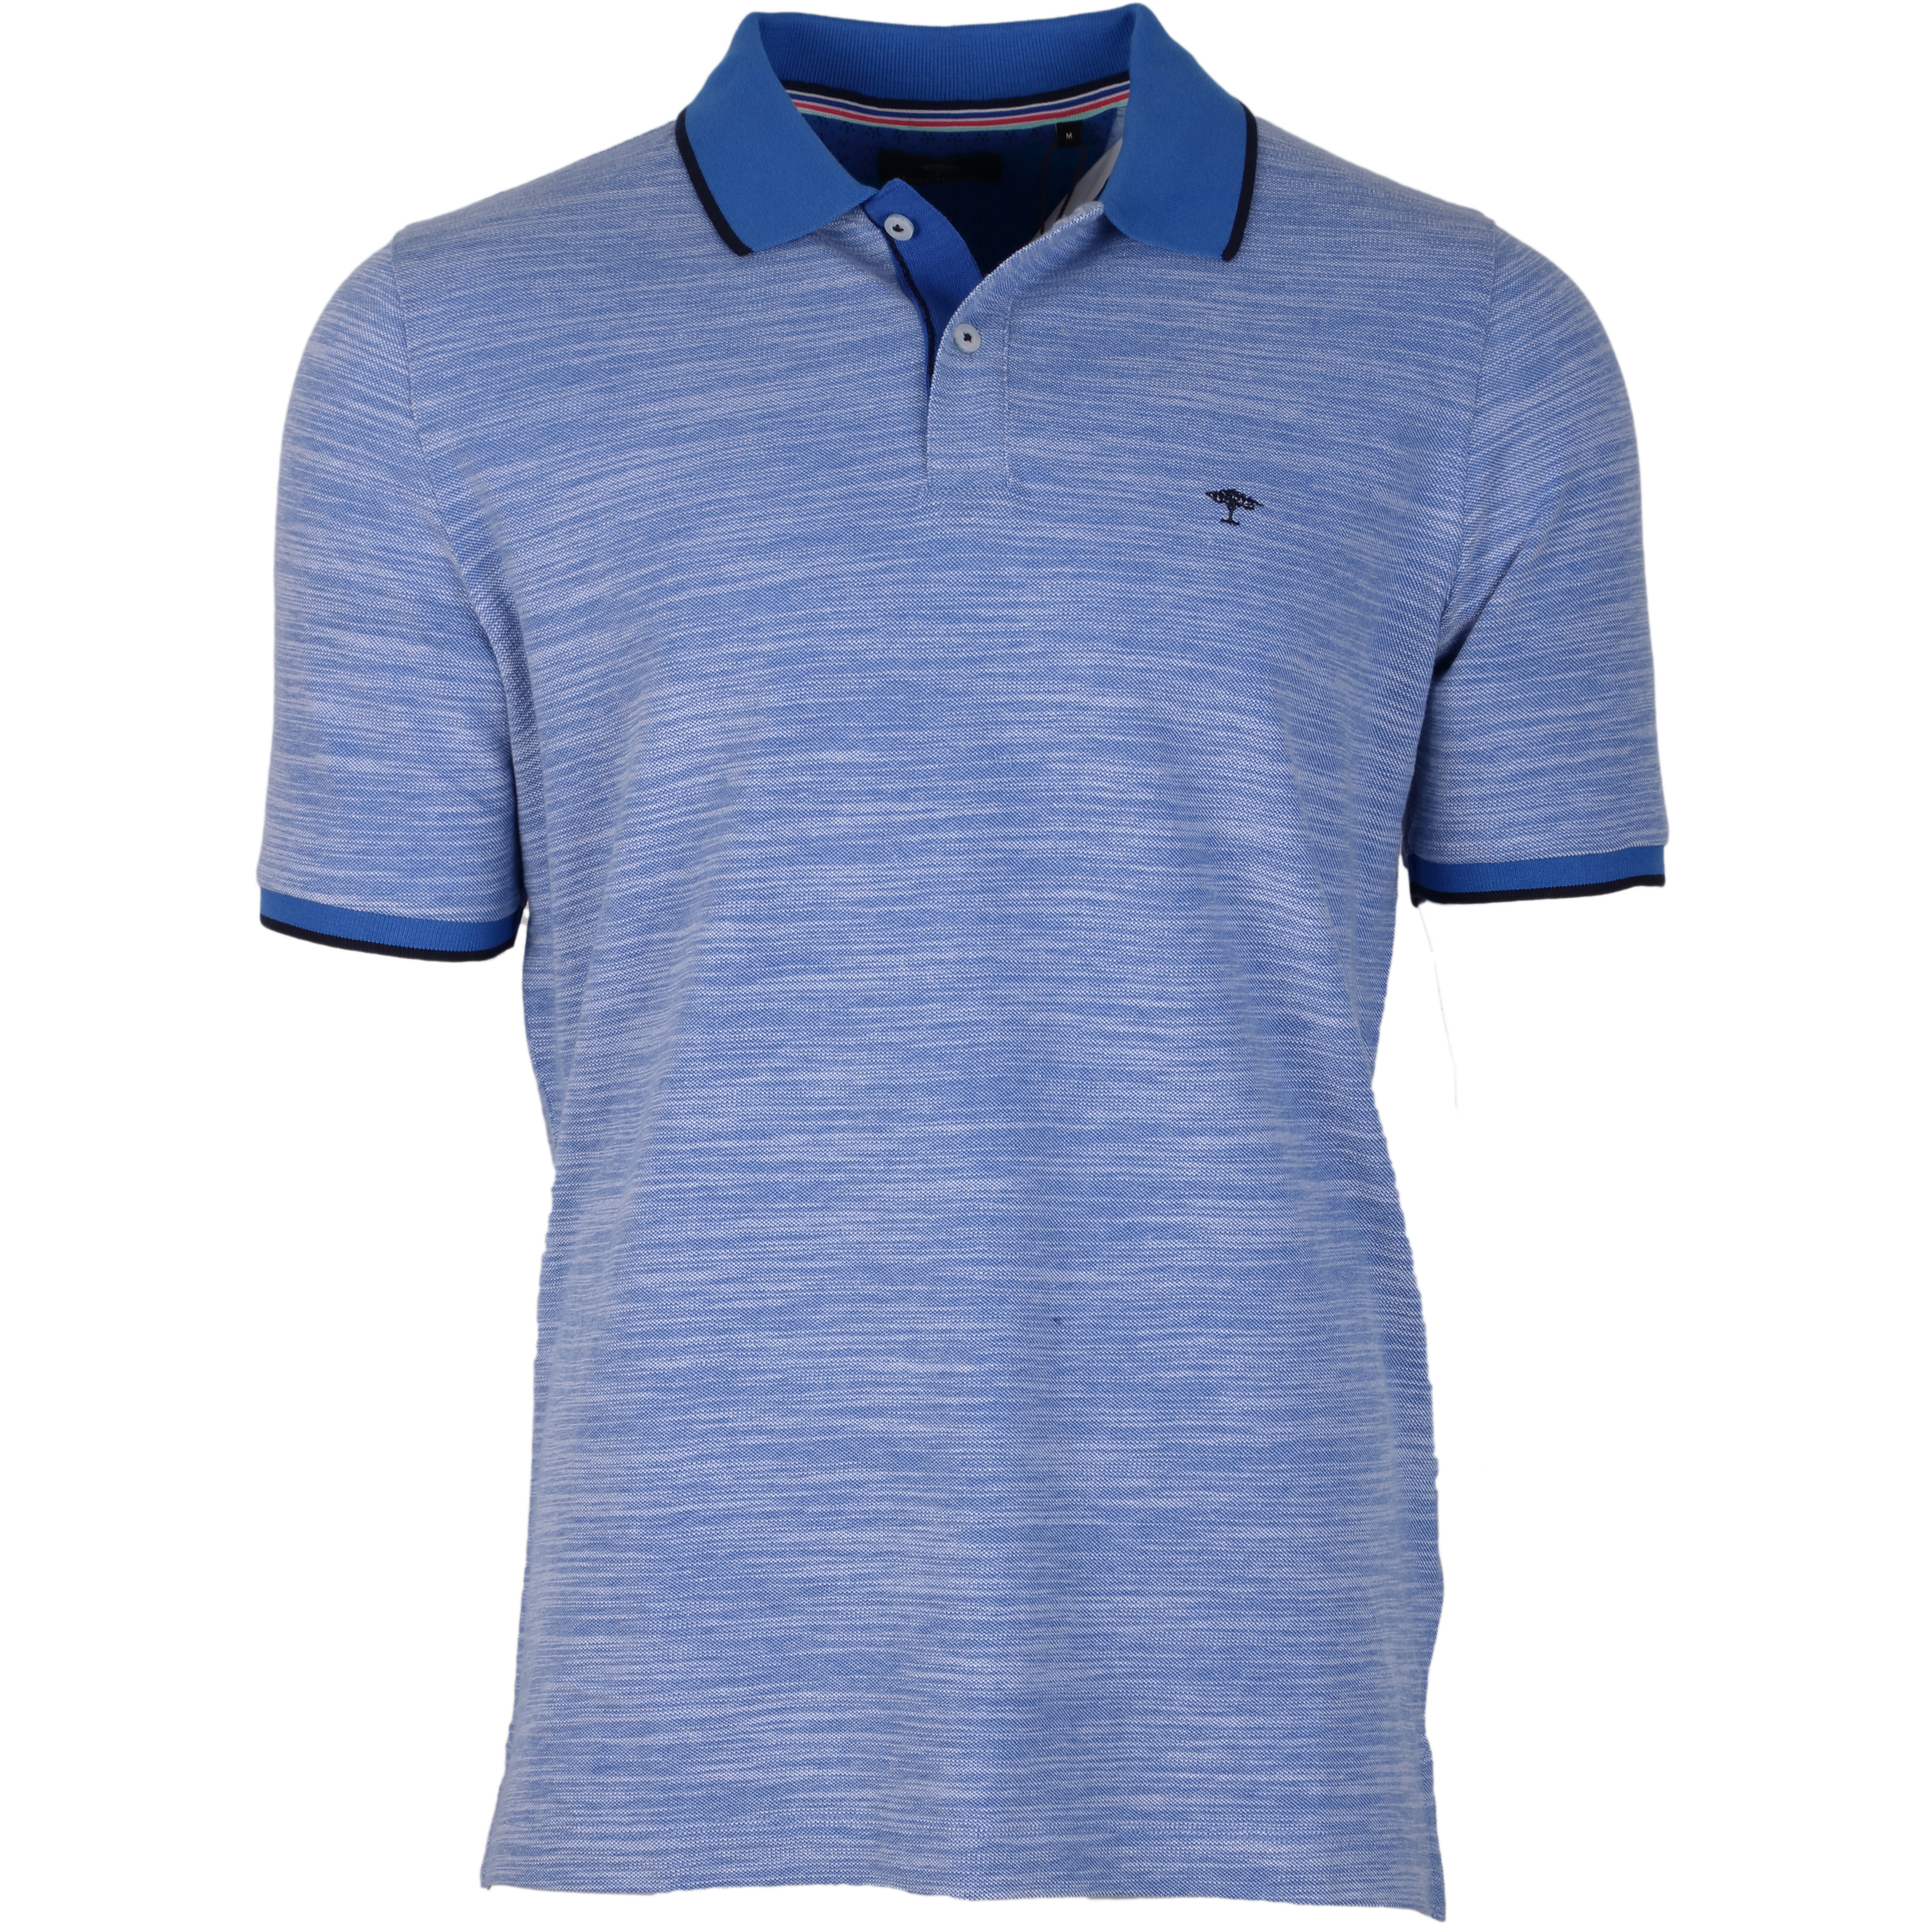 Fynch-Hatton Poloshirt 2-Tone M blau